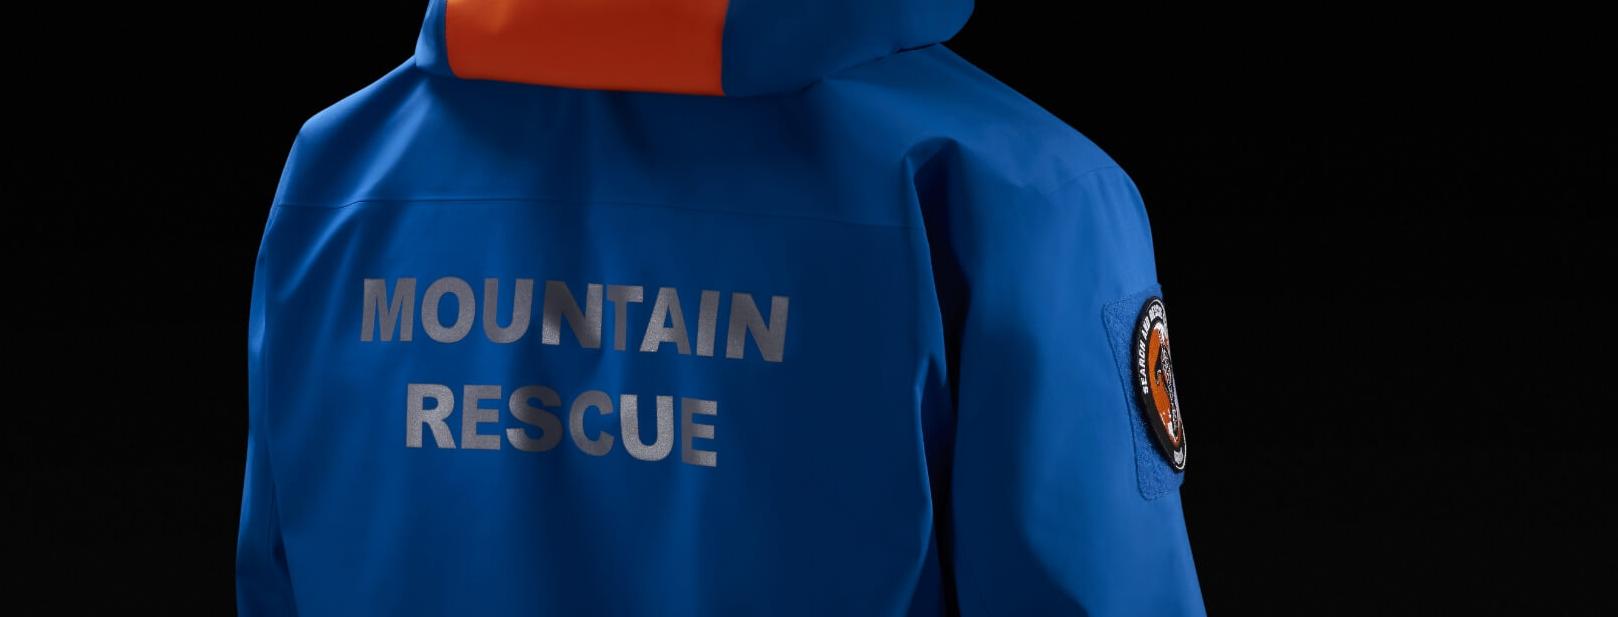 Arc'teryx Gore-tex Pro jacket for mountain rescue